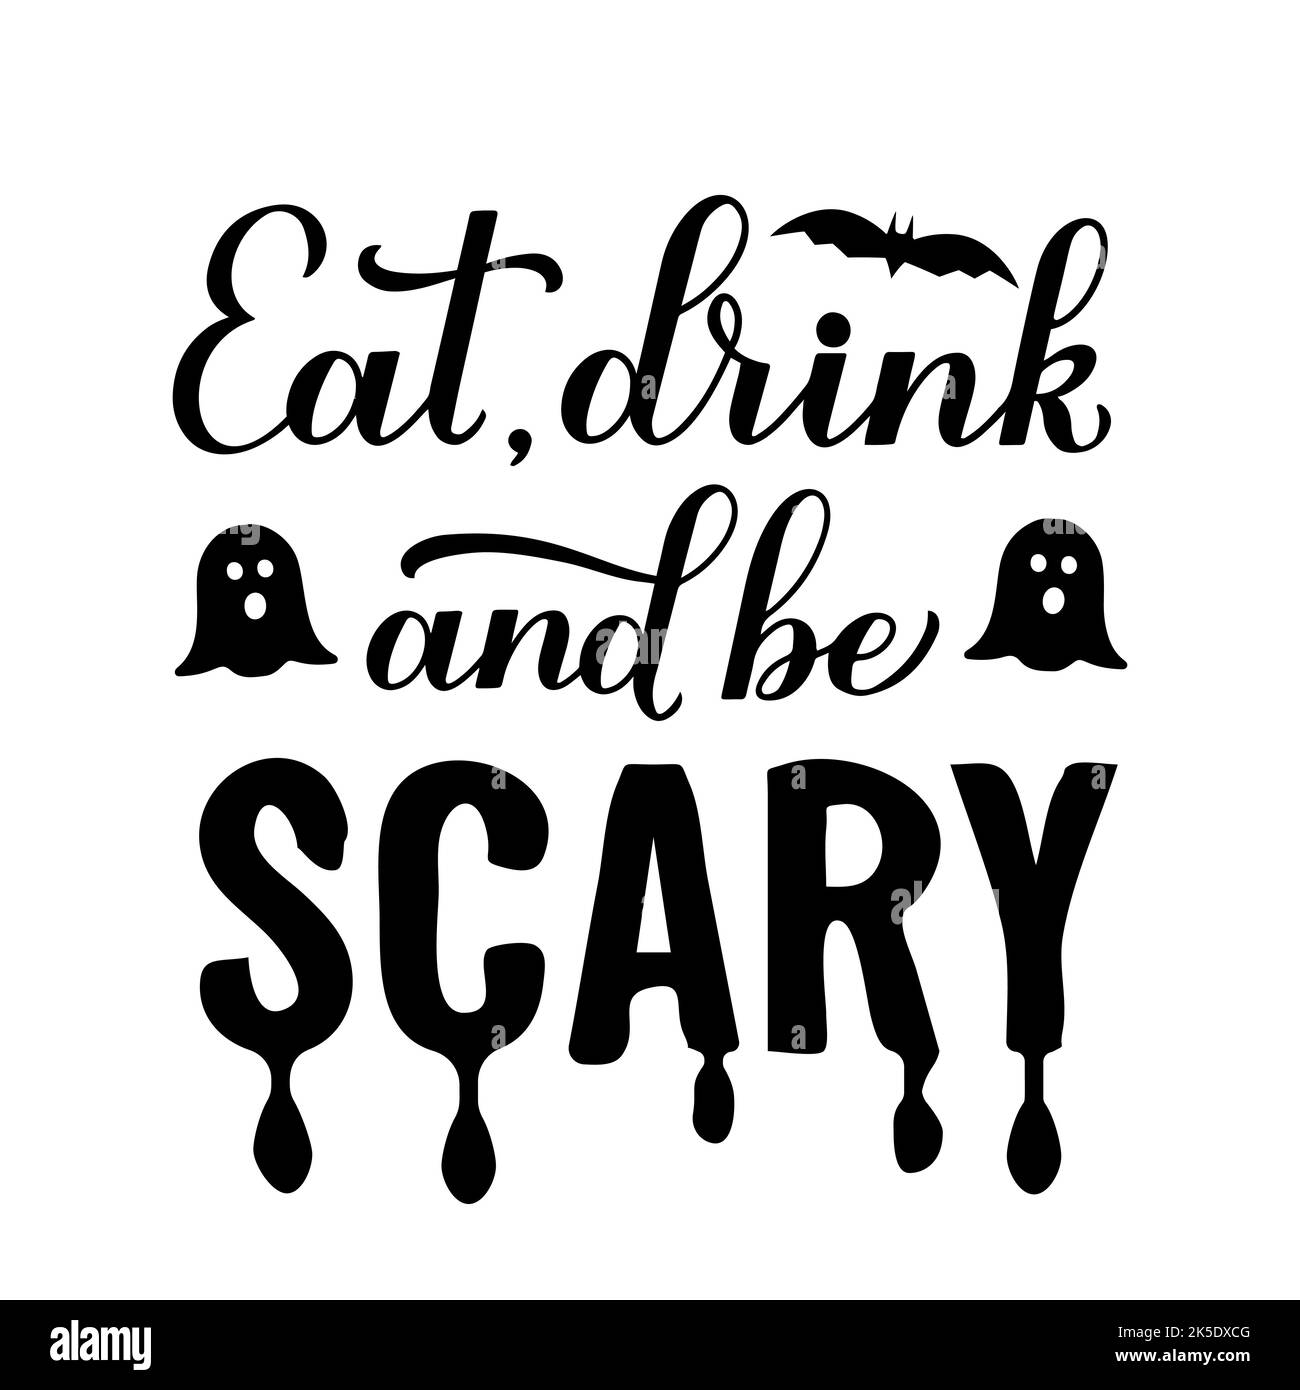 Witziges Halloween-Zitat. Essen, trinken und seien Sie unruhig. Vektorvorlage für Banner, Typografie-Poster, Grußkarte, Party-Einladung, Shirt, Usw. Stock Vektor